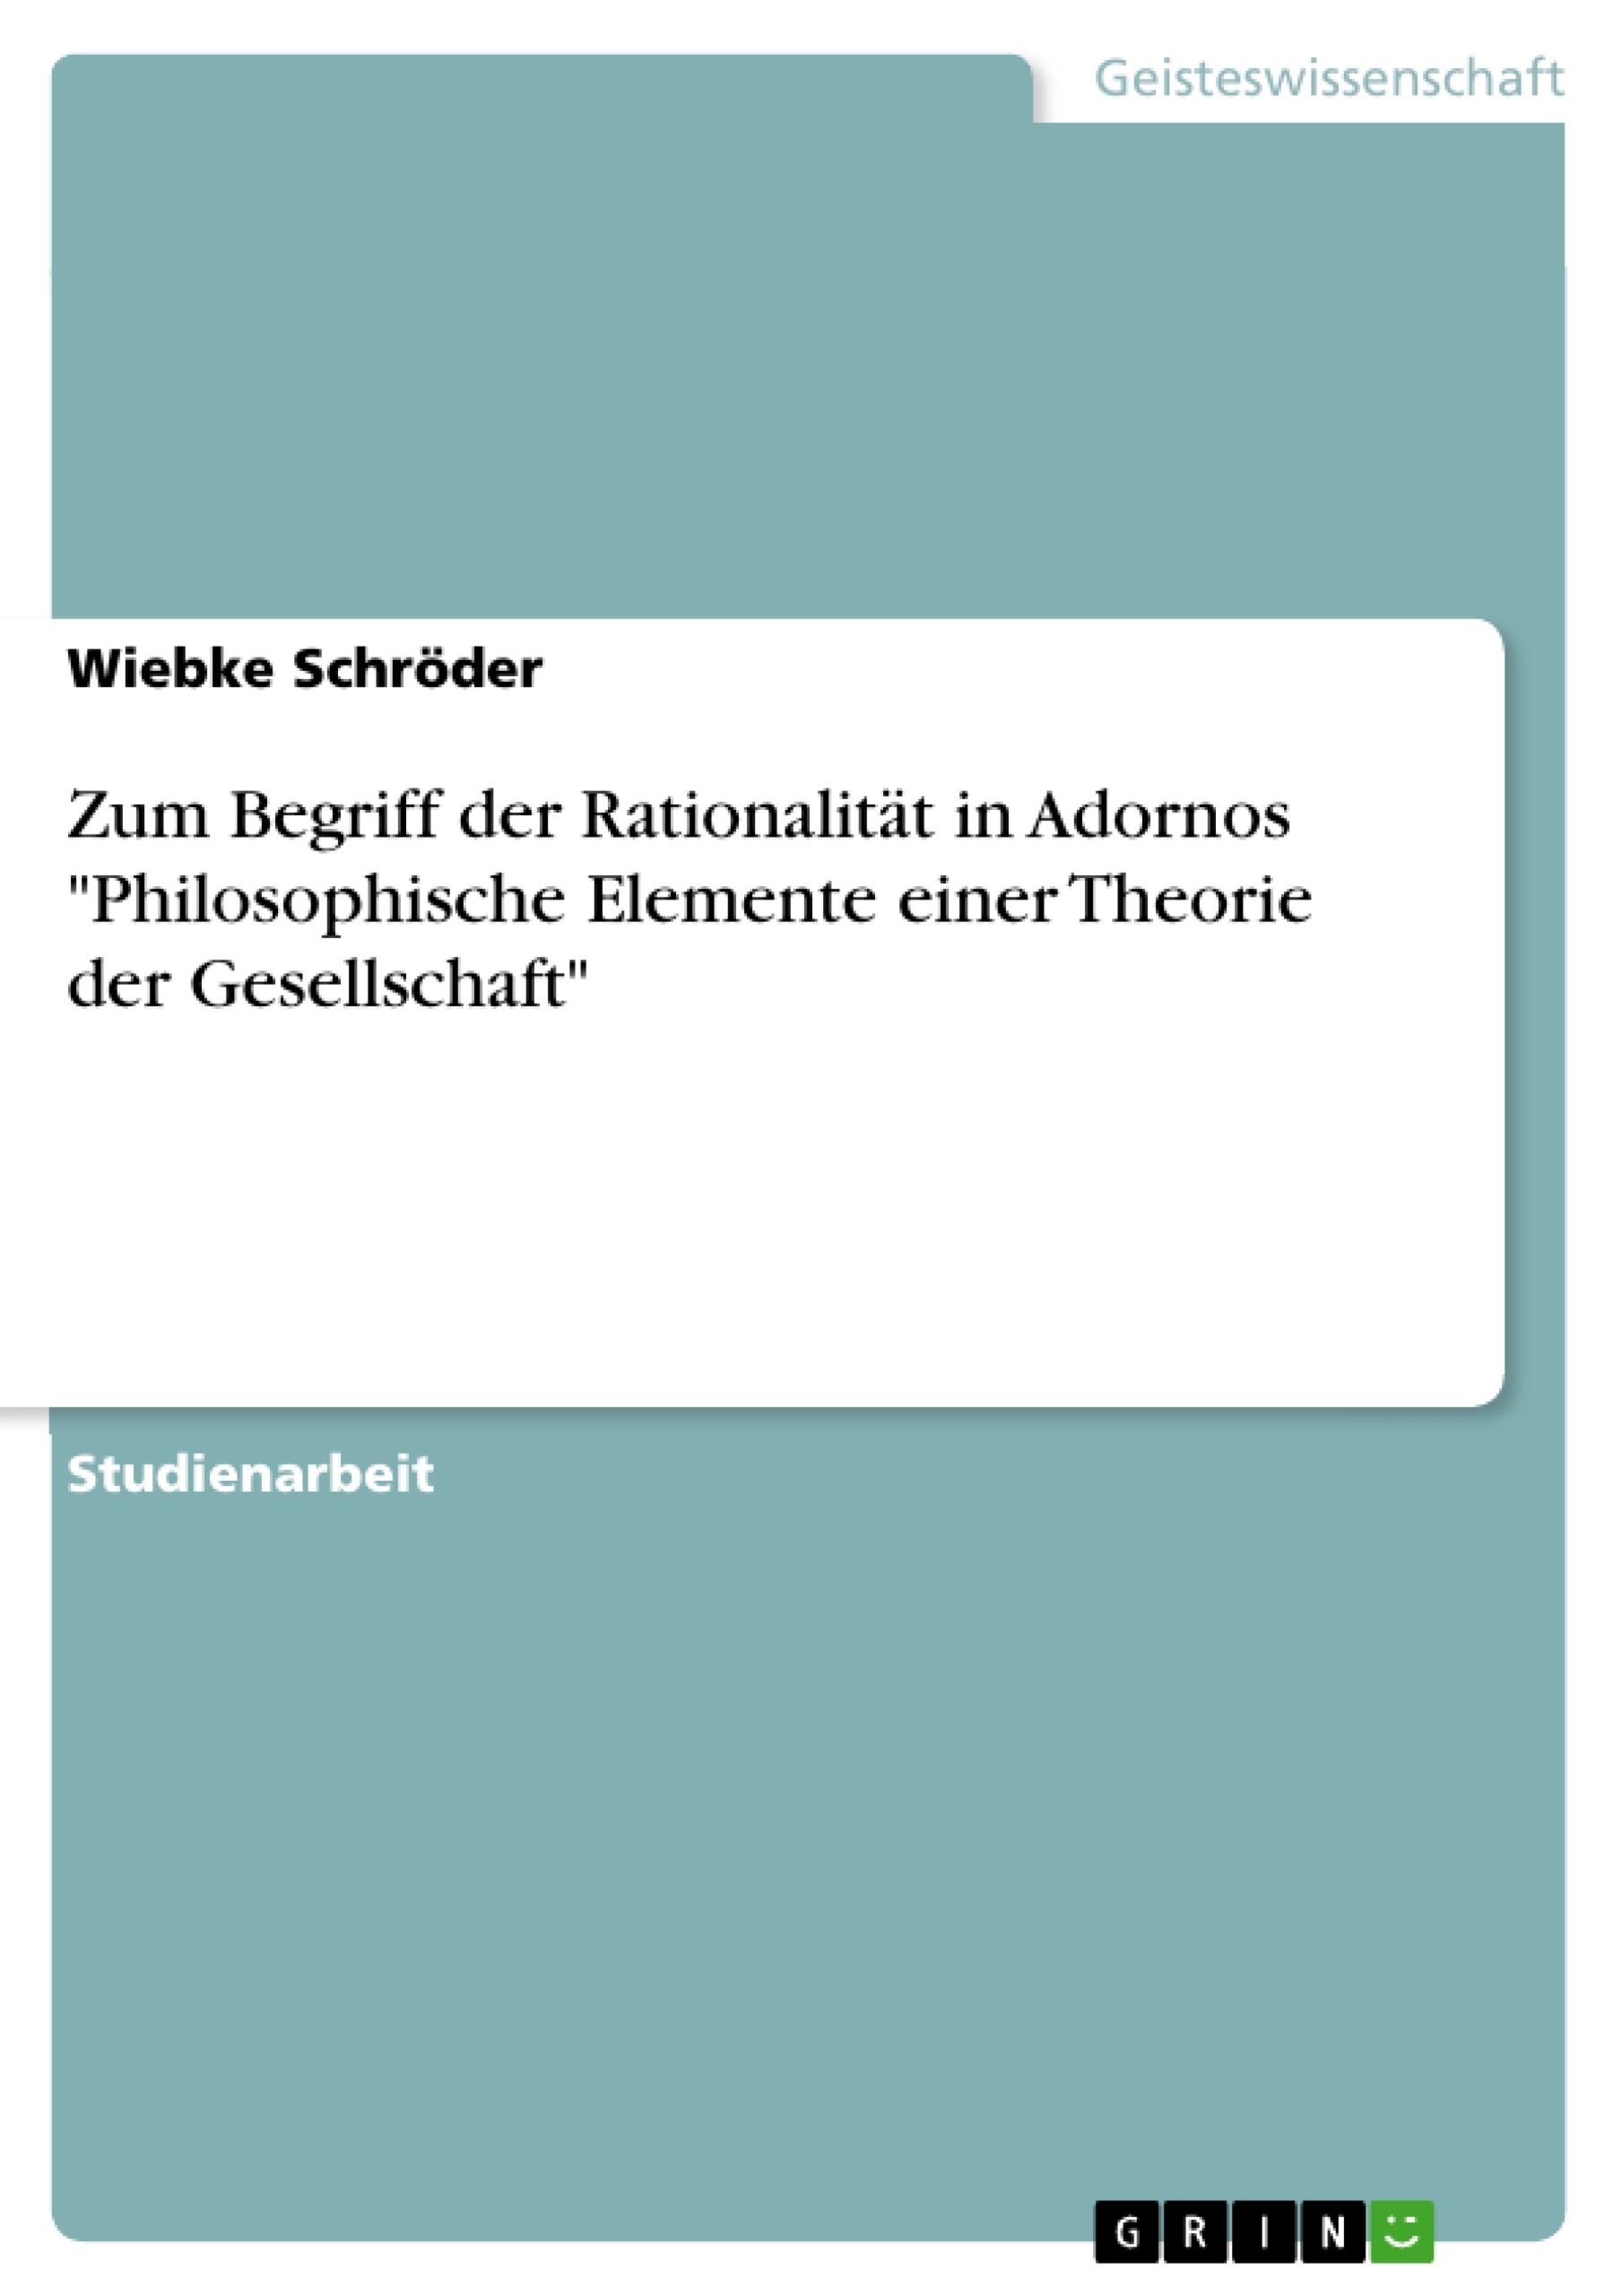 Title: Zum Begriff der Rationalität in Adornos "Philosophische Elemente einer Theorie der Gesellschaft"